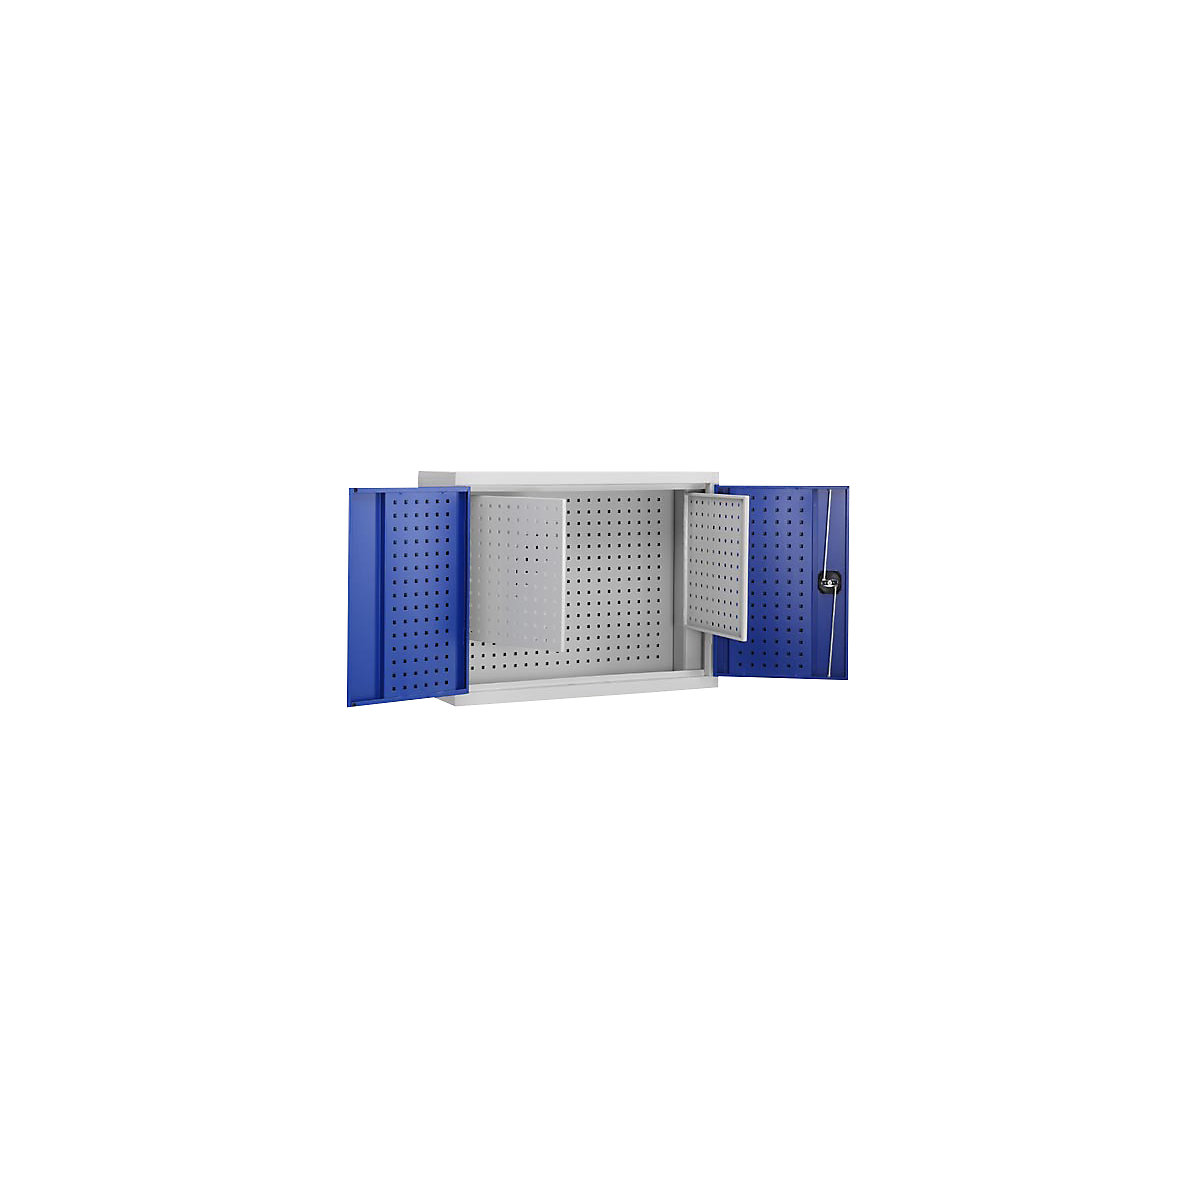 Gereedschapshangkast, deurbinnenzijde van perforatieplaat met 2 extra platen, gentiaanblauw RAL 5010-4